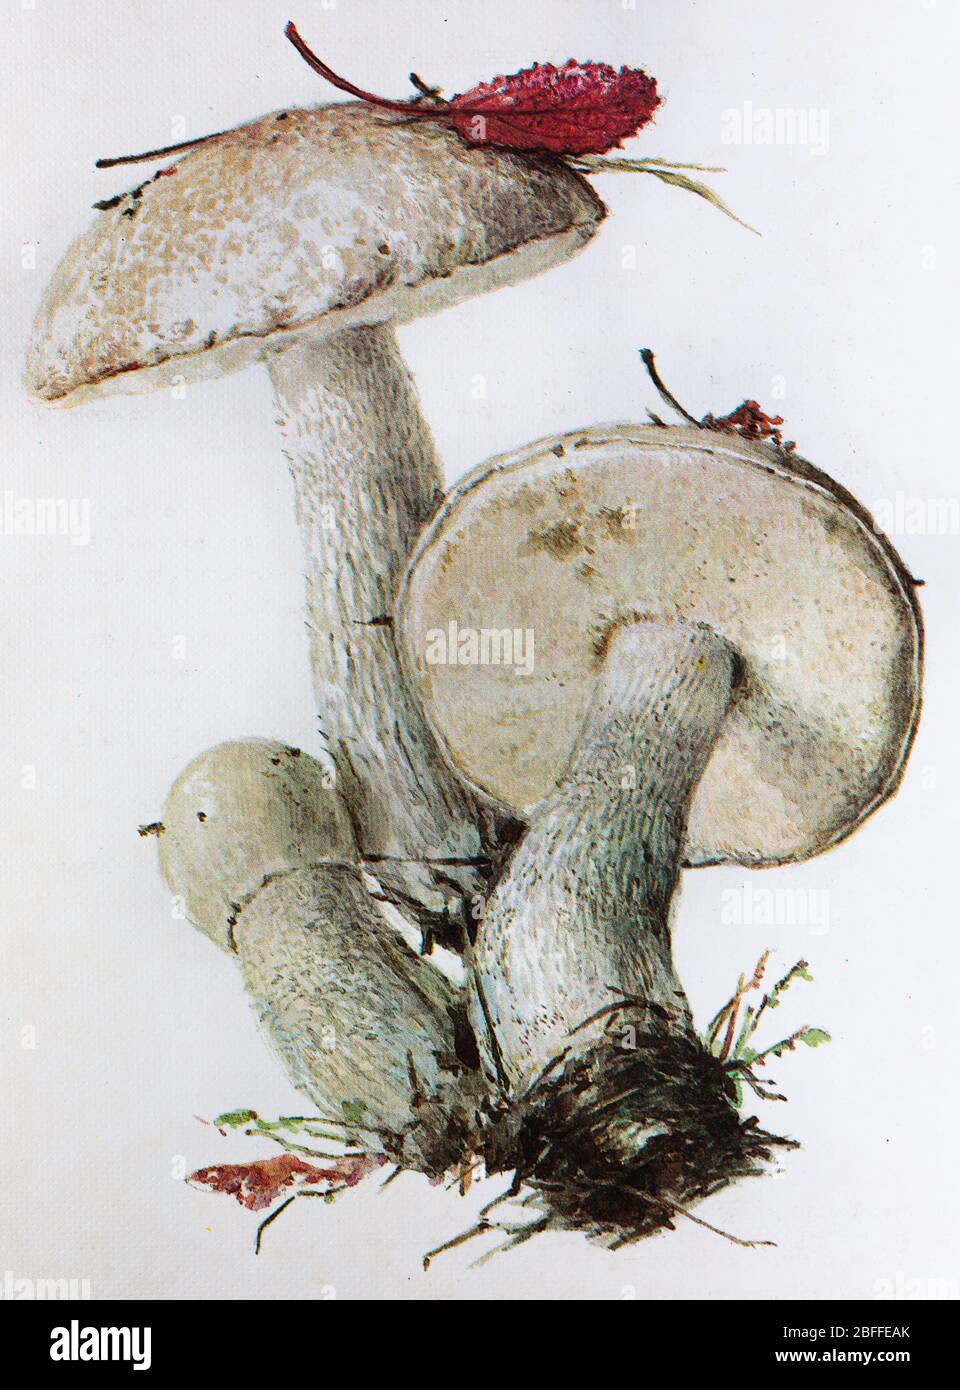 Leccinum percandidum mushroom Stock Photo